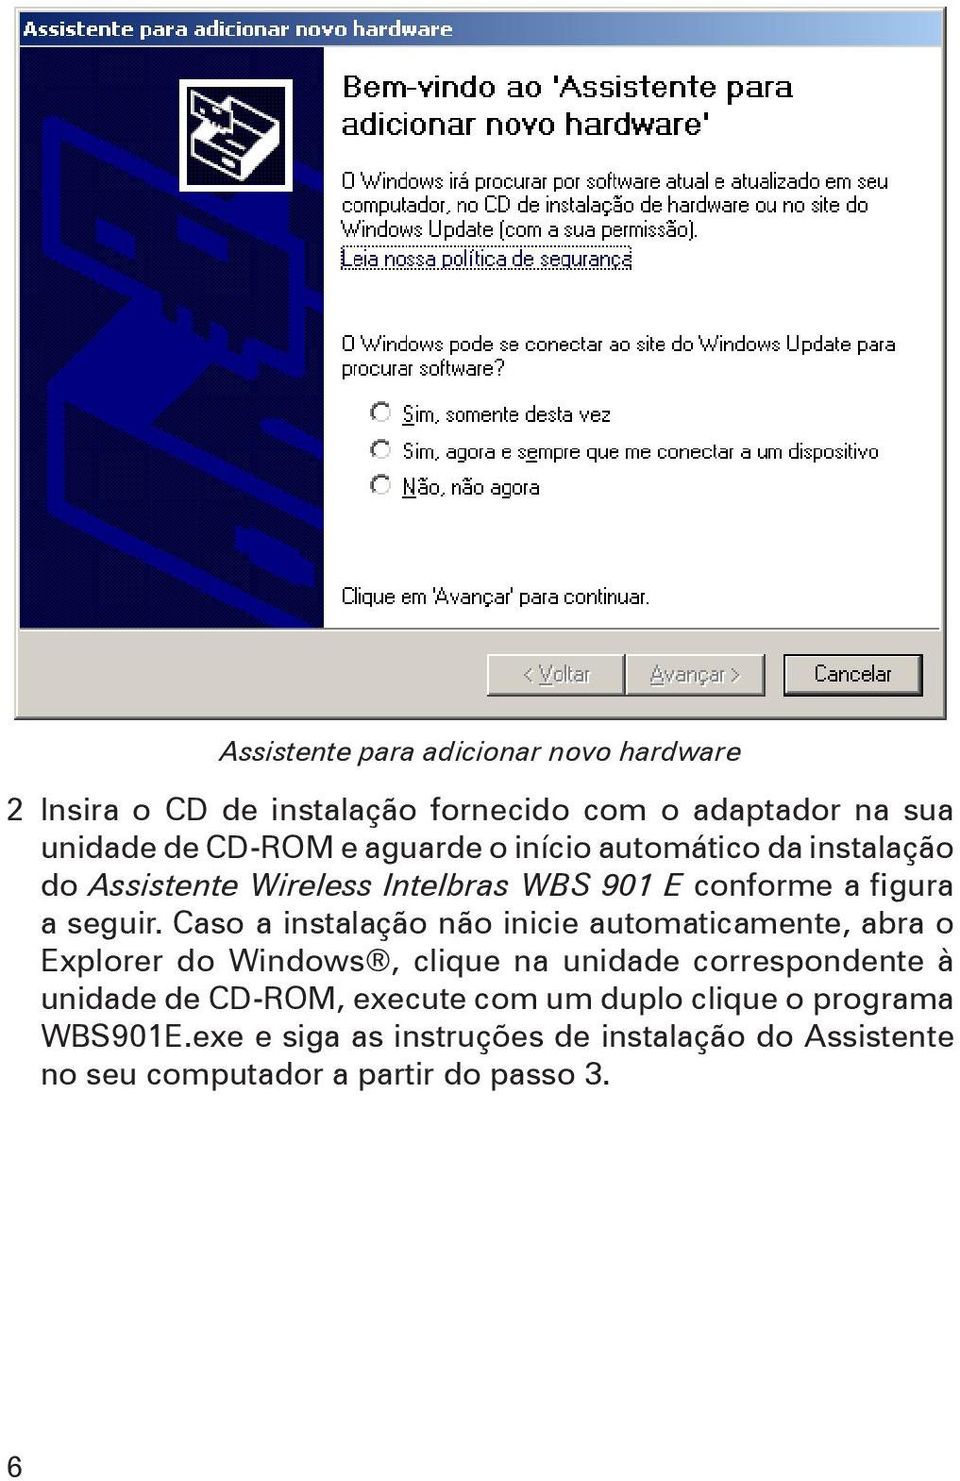 Caso a instalação não inicie automaticamente, abra o Explorer do Windows, clique na unidade correspondente à unidade de